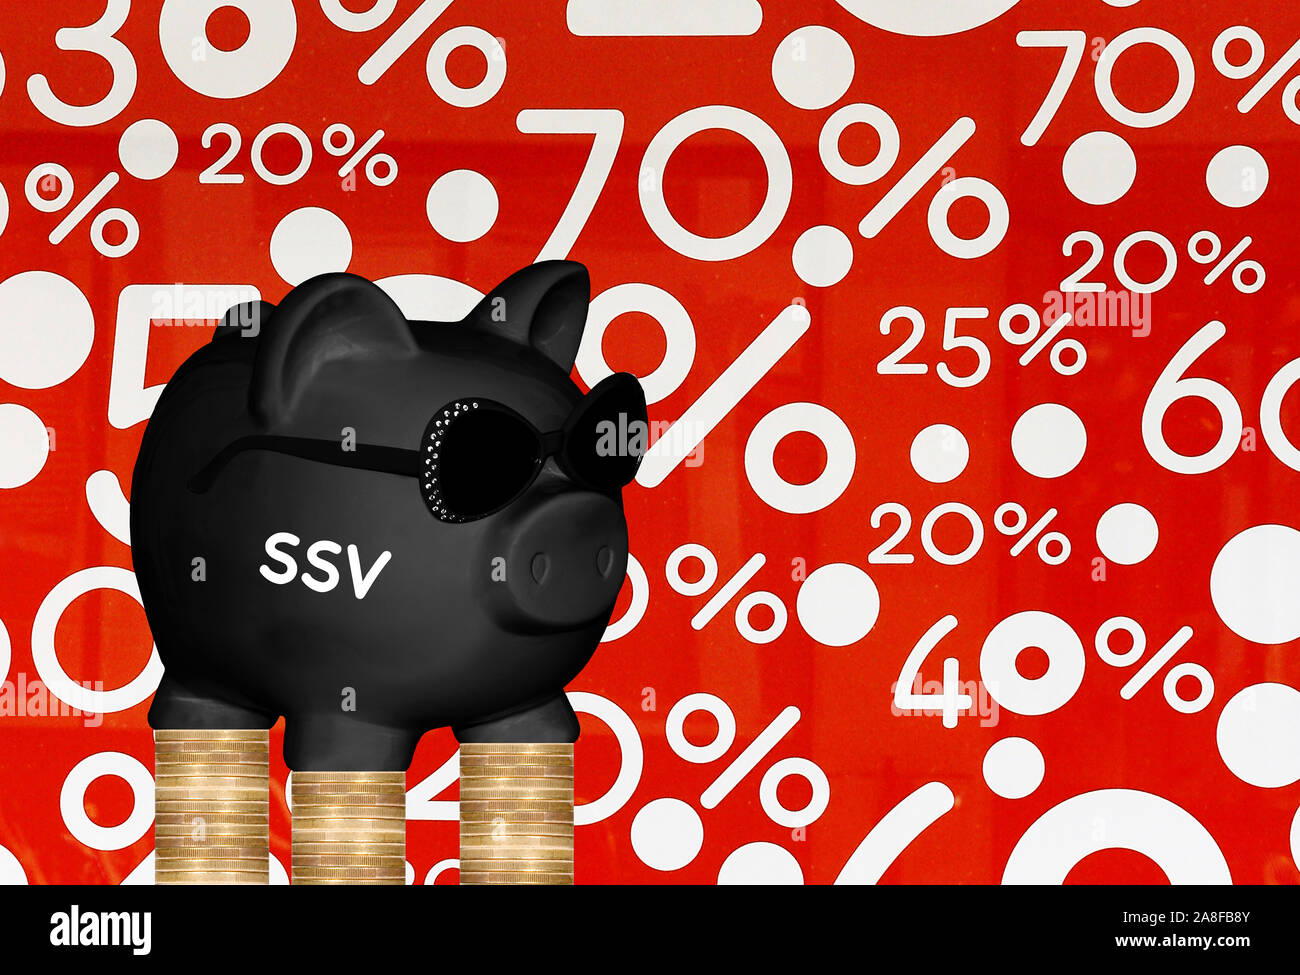 Schwarzes Sparschwein, Sparen, Vorsorge, Aufdruck: SSV, Sommerschlussverkauf, Prozente, Schnäppchen, Stock Photo